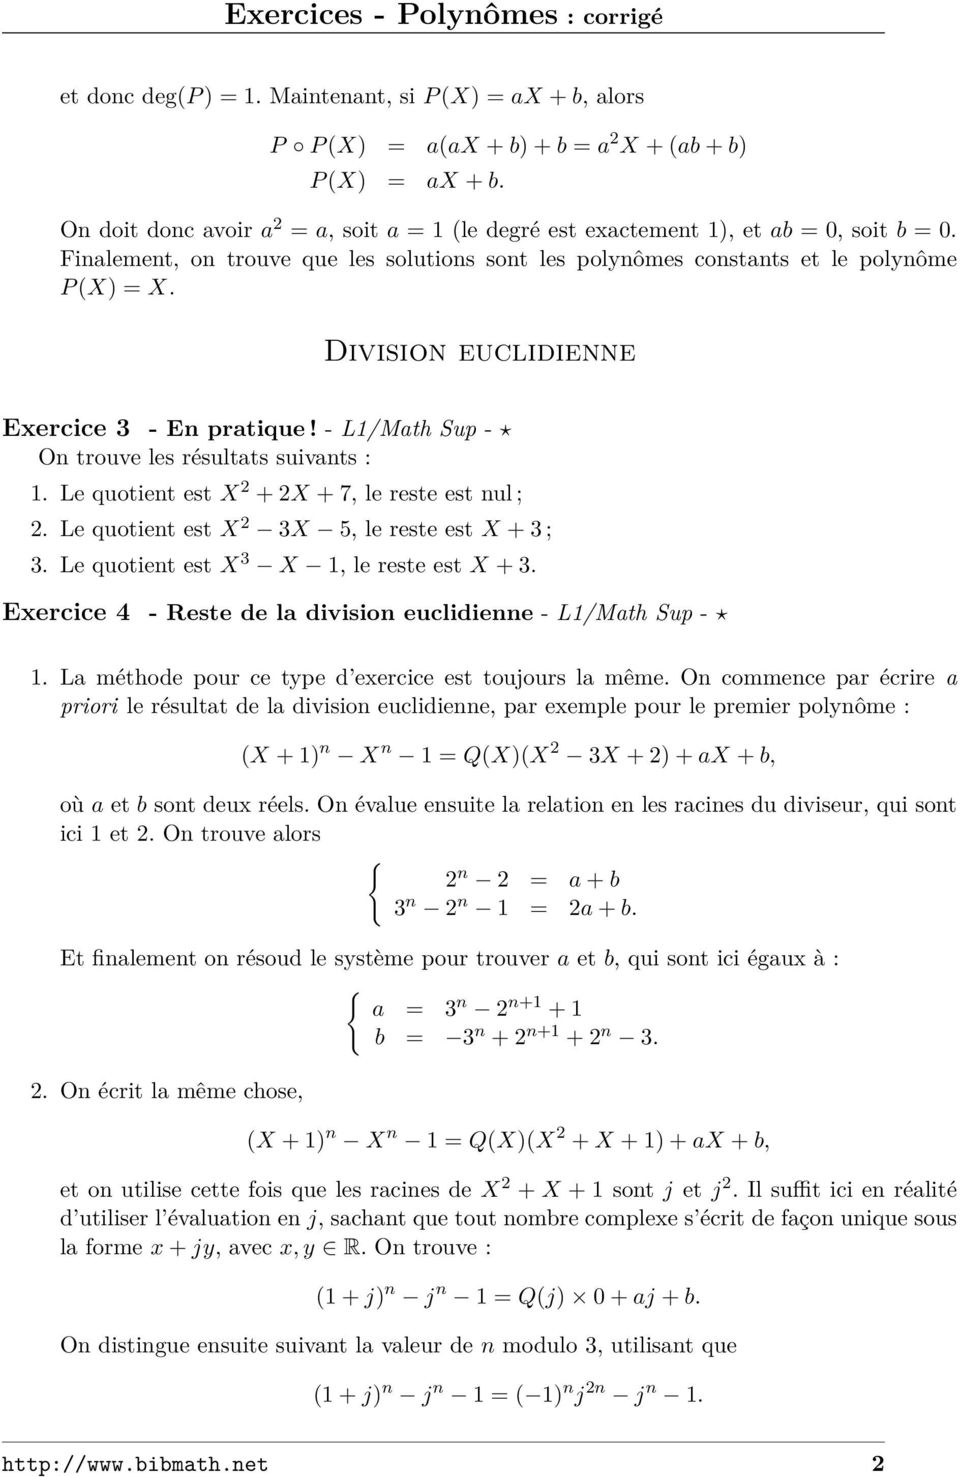 Division euclidienne Exercice 3 - En pratique! - L1/Math Sup - On trouve les résultats suivants : 1. Le quotient est X + X + 7, le reste est nul ;. Le quotient est X 3X 5, le reste est X + 3 ; 3.